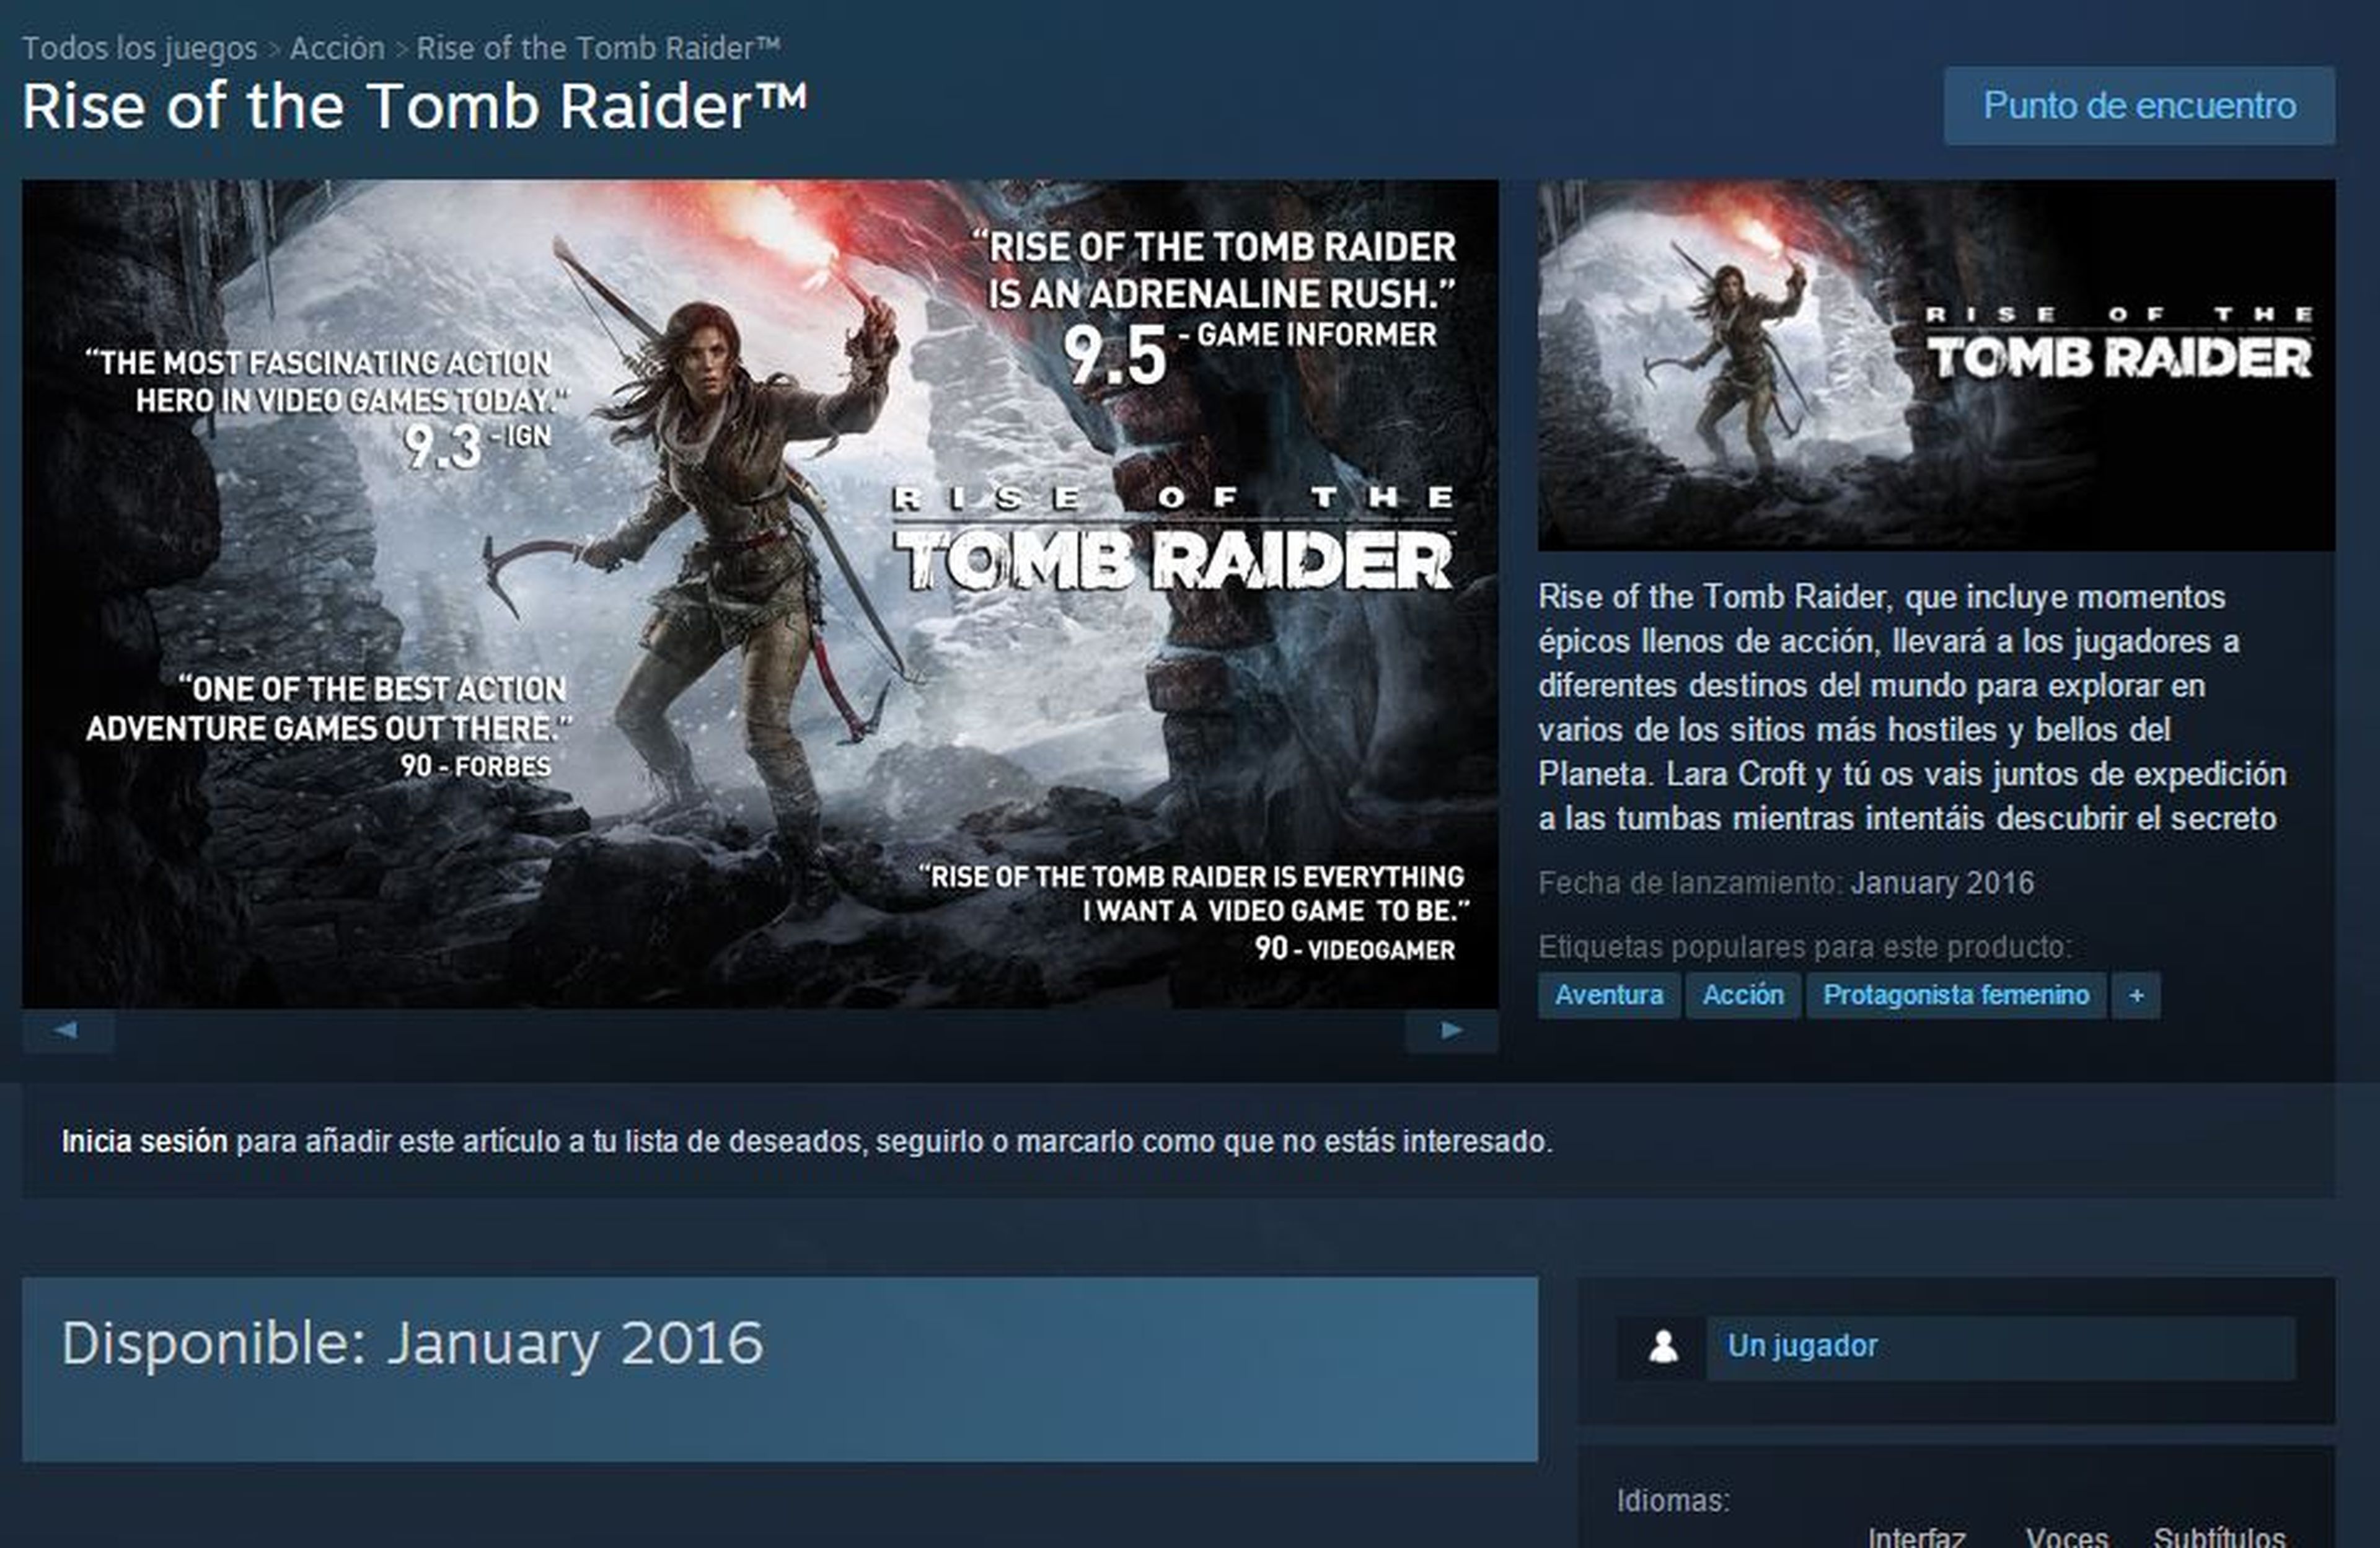 Rise of the Tomb Raider para PC, confirmada su fecha de lanzamiento